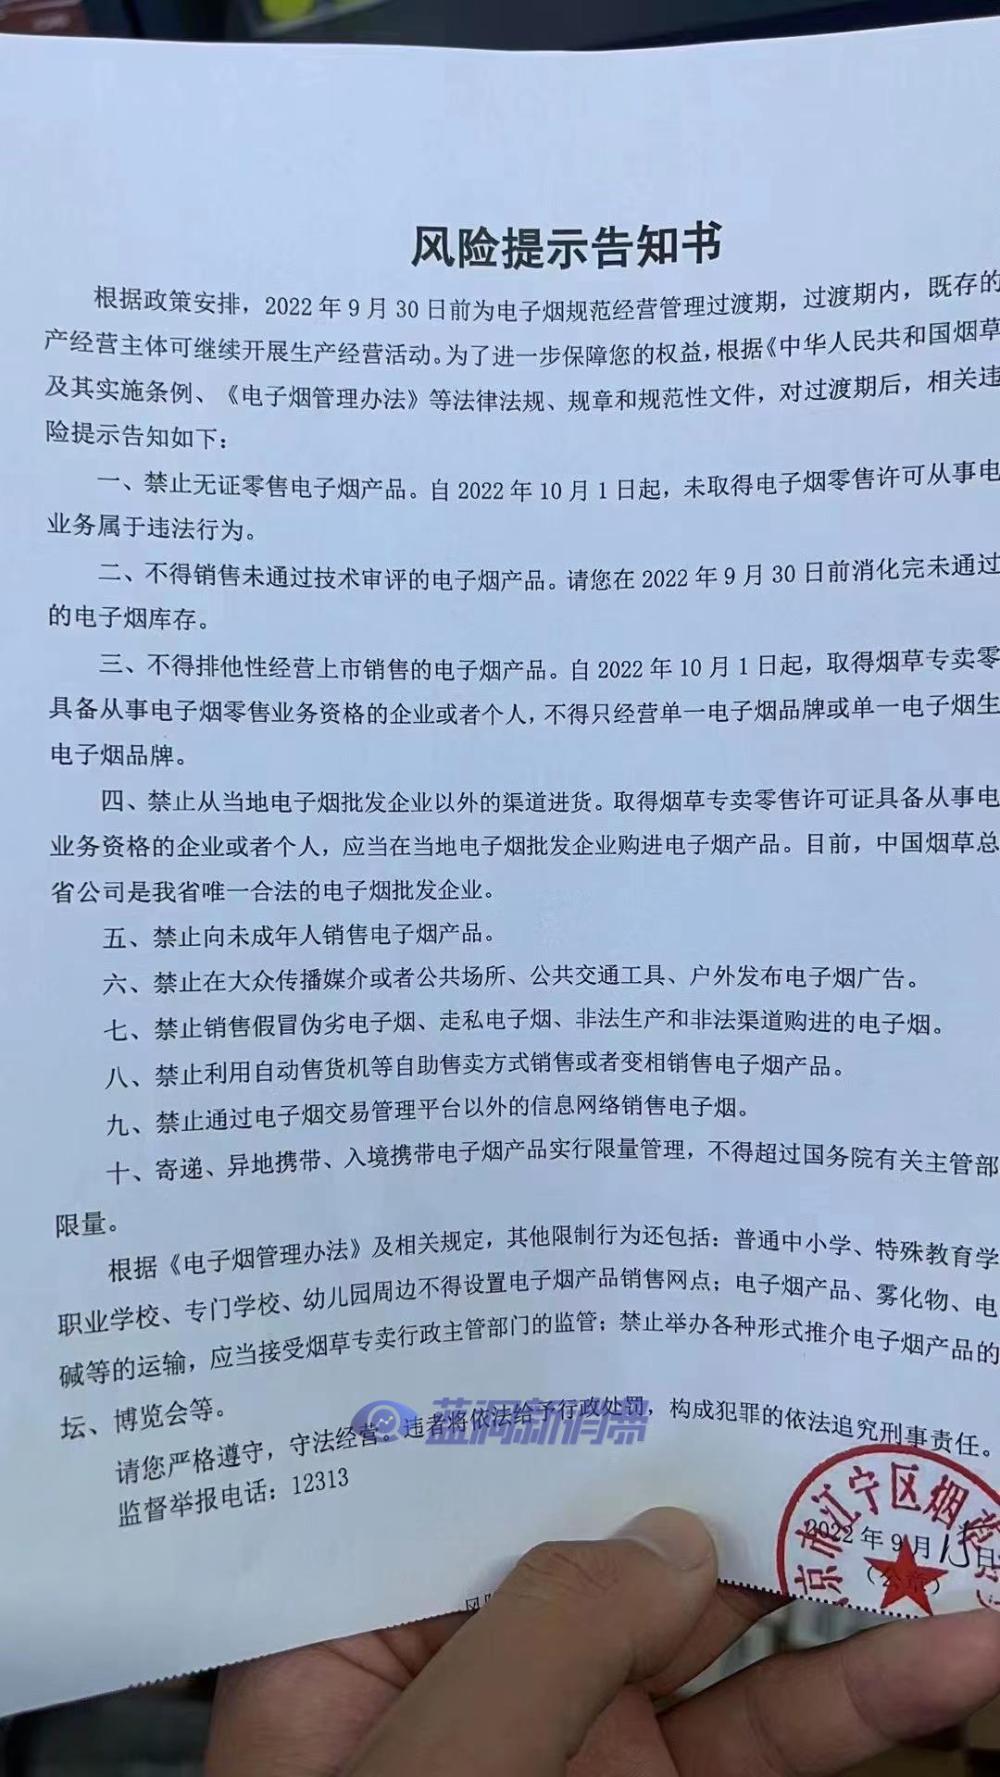 江苏发布电子烟十大经营风险提示告知书：无证销售违法，邮寄遵守规定